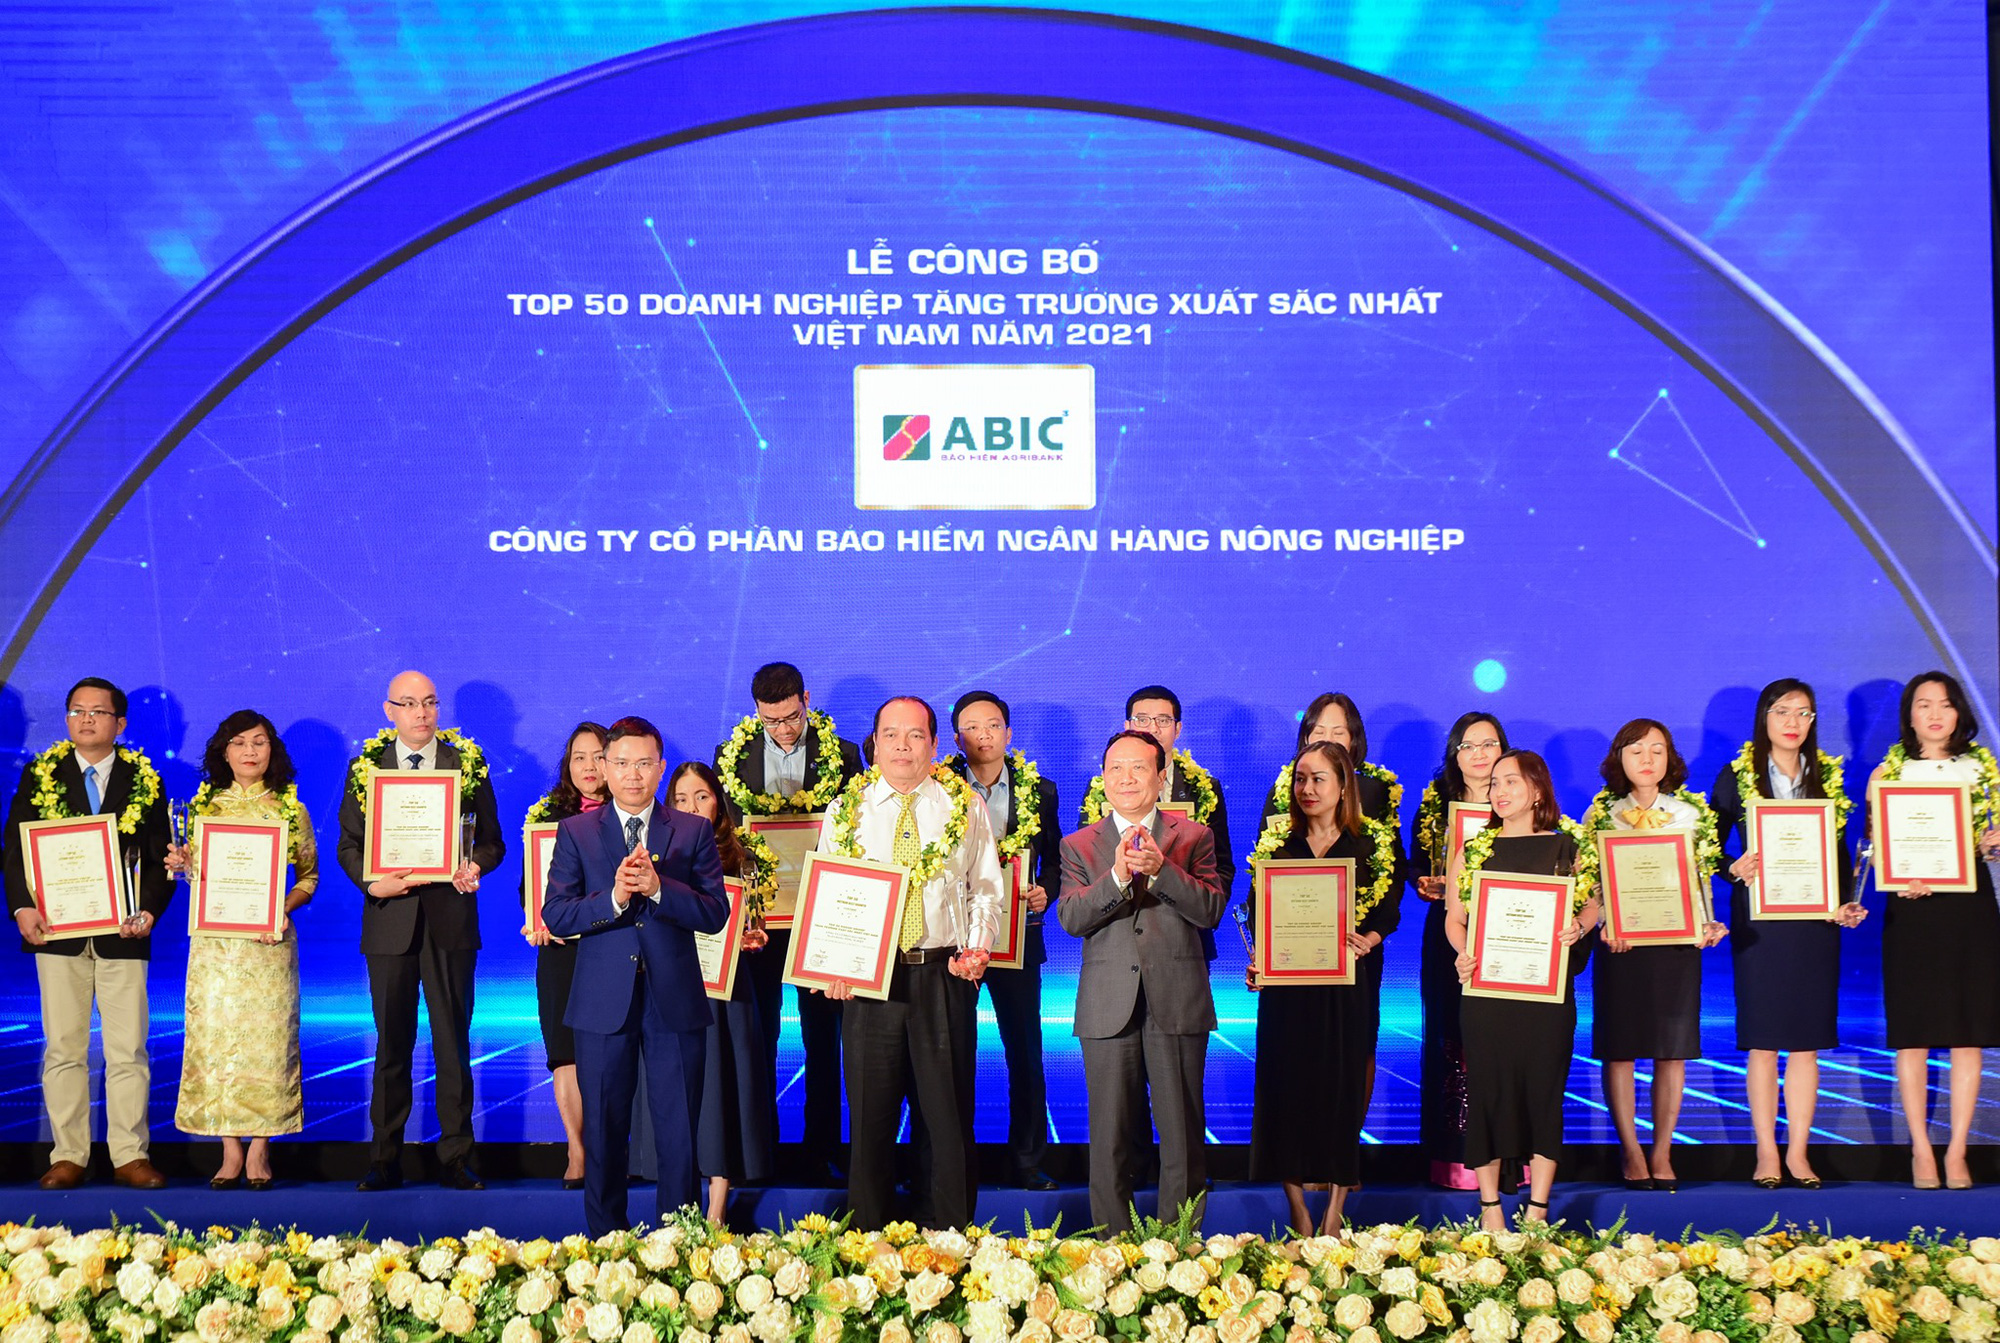 Bảo hiểm Agribank được vinh danh “TOP 50 Doanh nghiệp tăng trưởng xuất sắc nhất Việt Nam 2021” - Ảnh 1.